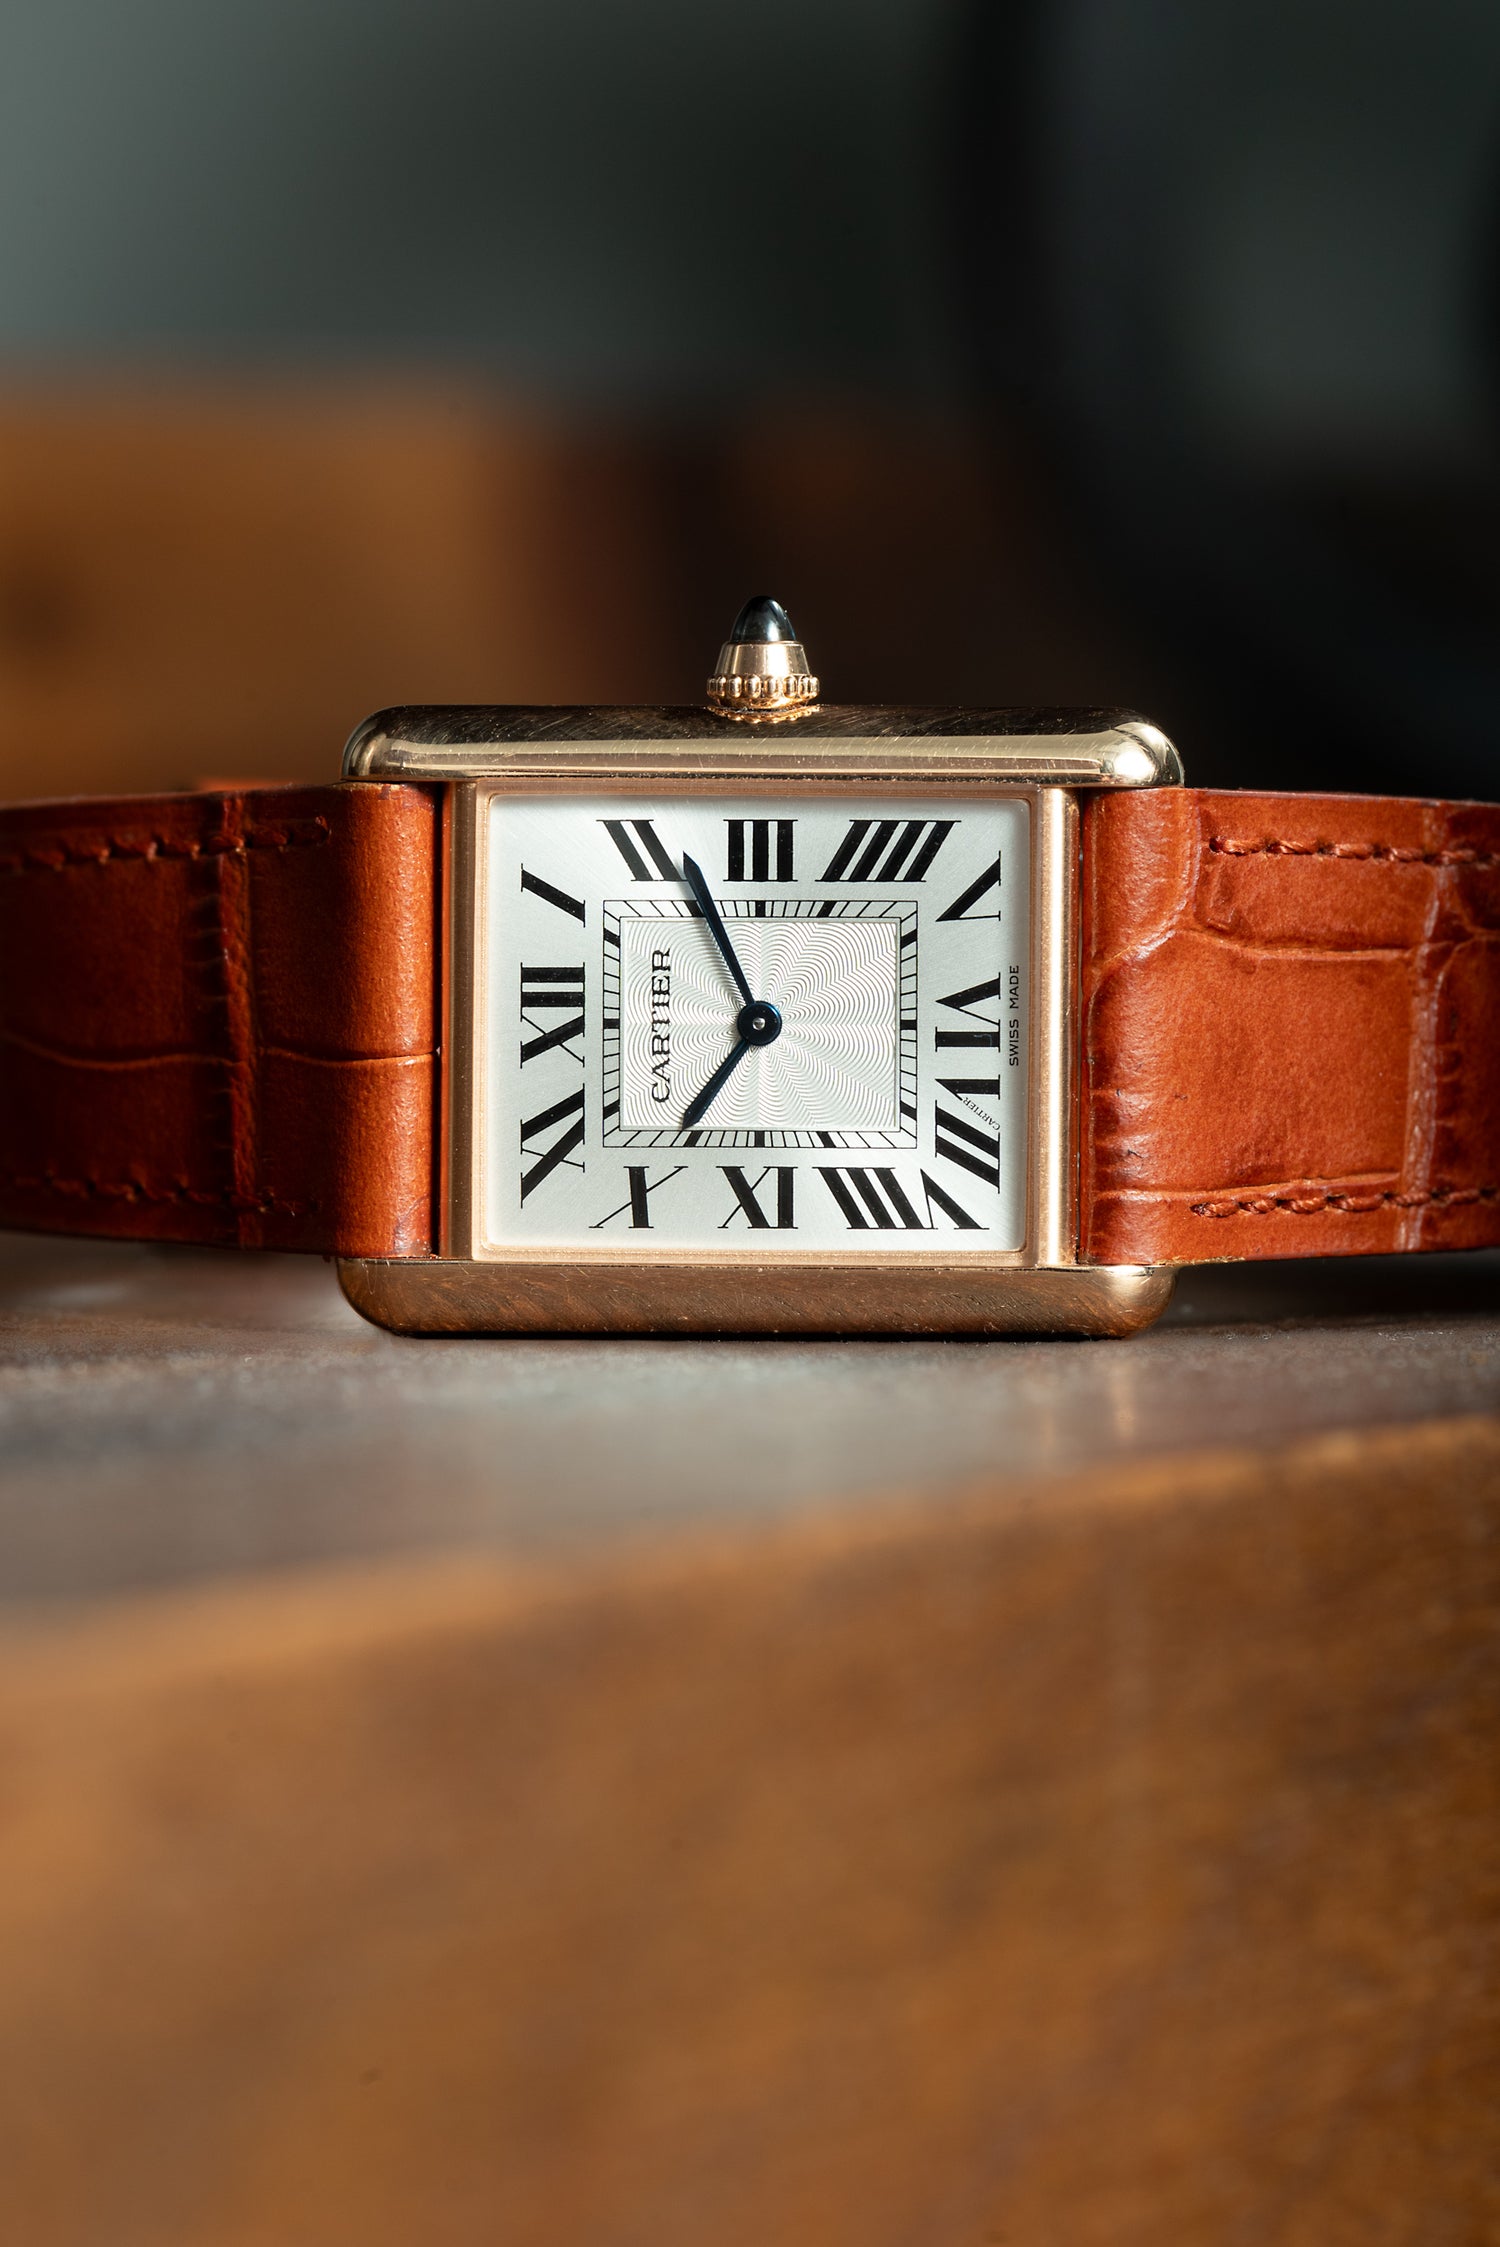 Cartier Tank Louis Cartier Watch